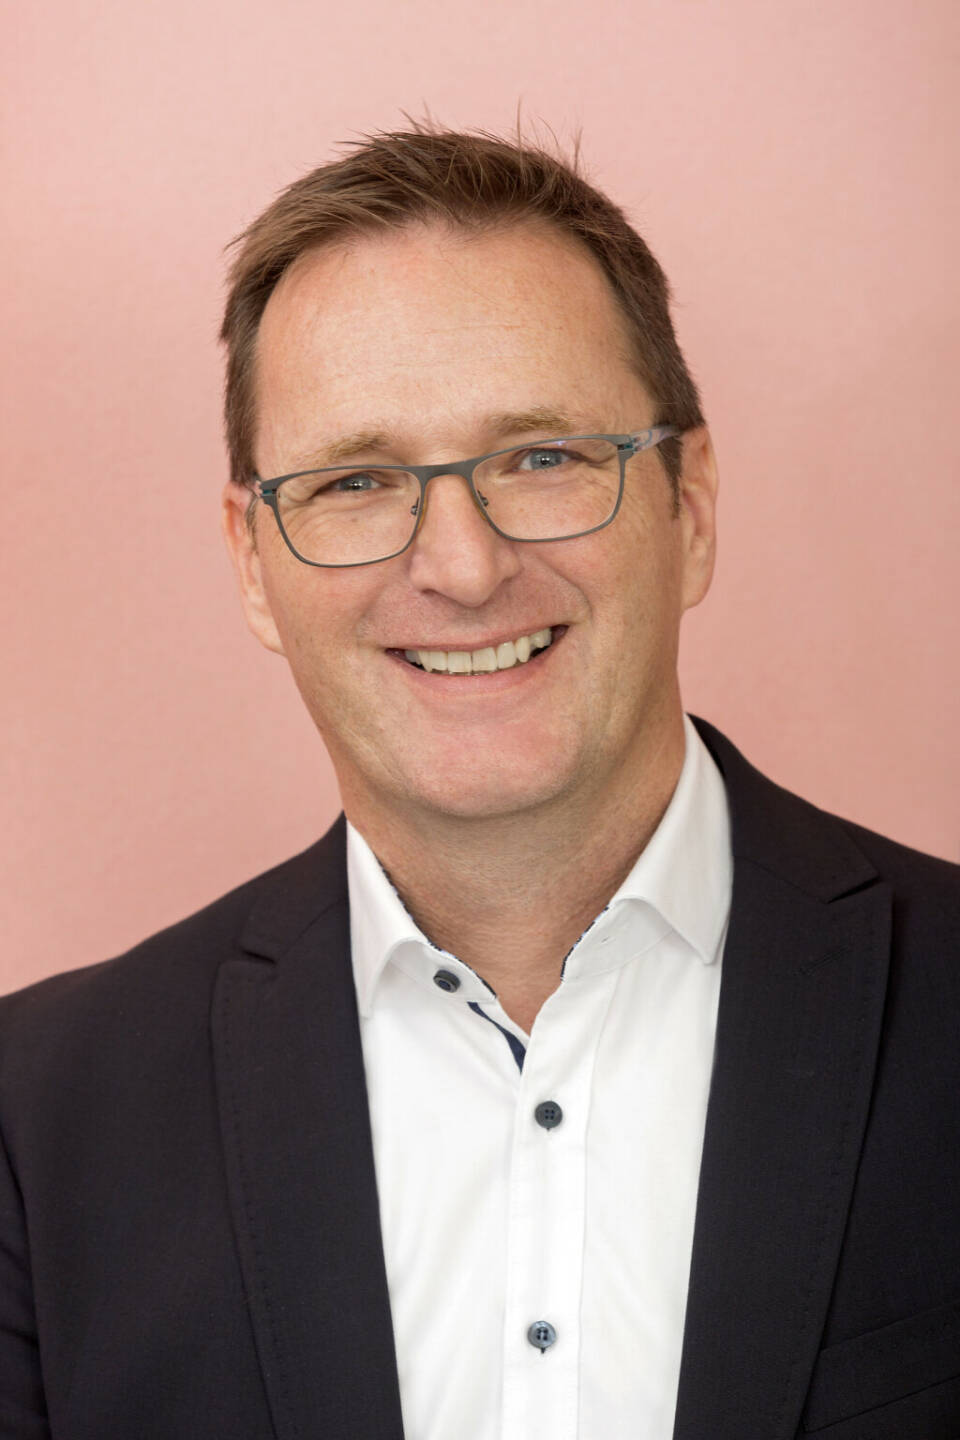 Mit 1. März übernimmt Andreas Kutil als CEO den Vorstandsbereich Marketing und Vertrieb, Credit: Manner/Noll